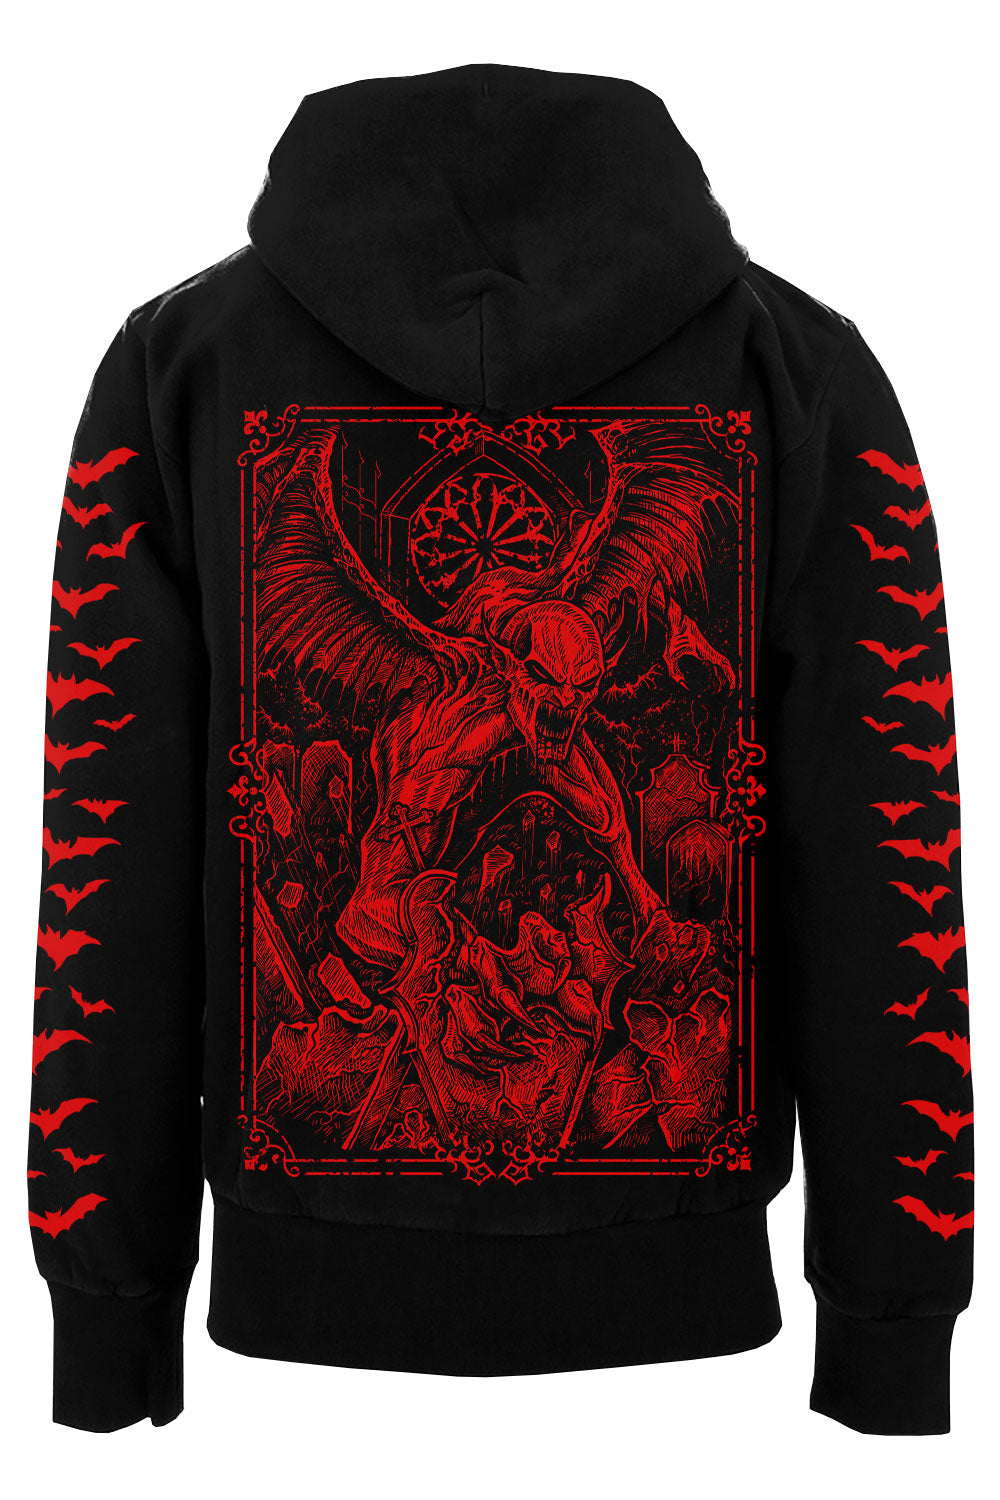 vampire goth hoodie